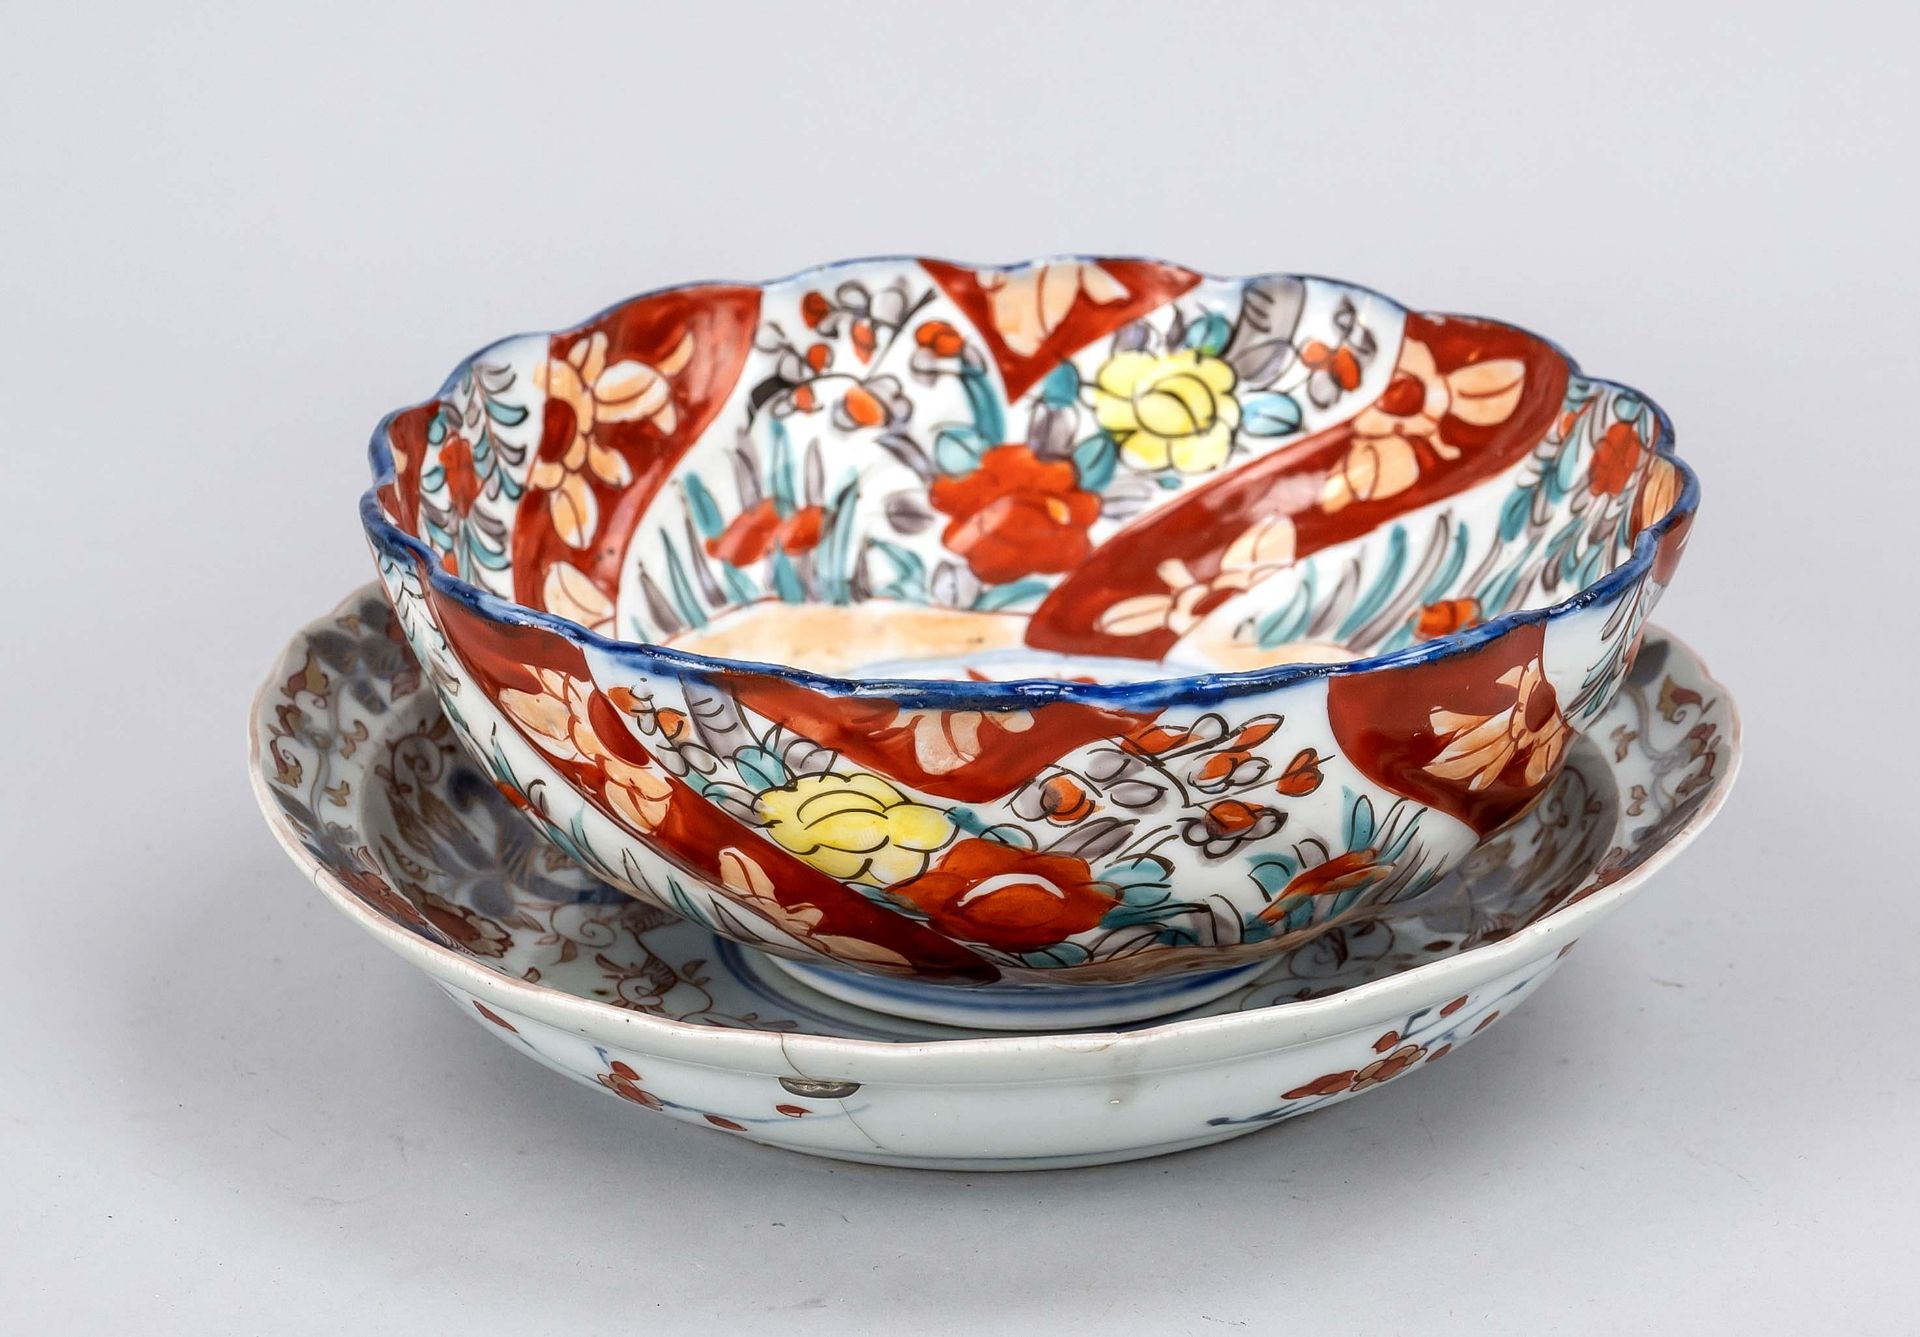 Small Imari ensemble, Japan, Edo period(1603-1868) 18th/19th century, porcelain with polychrome